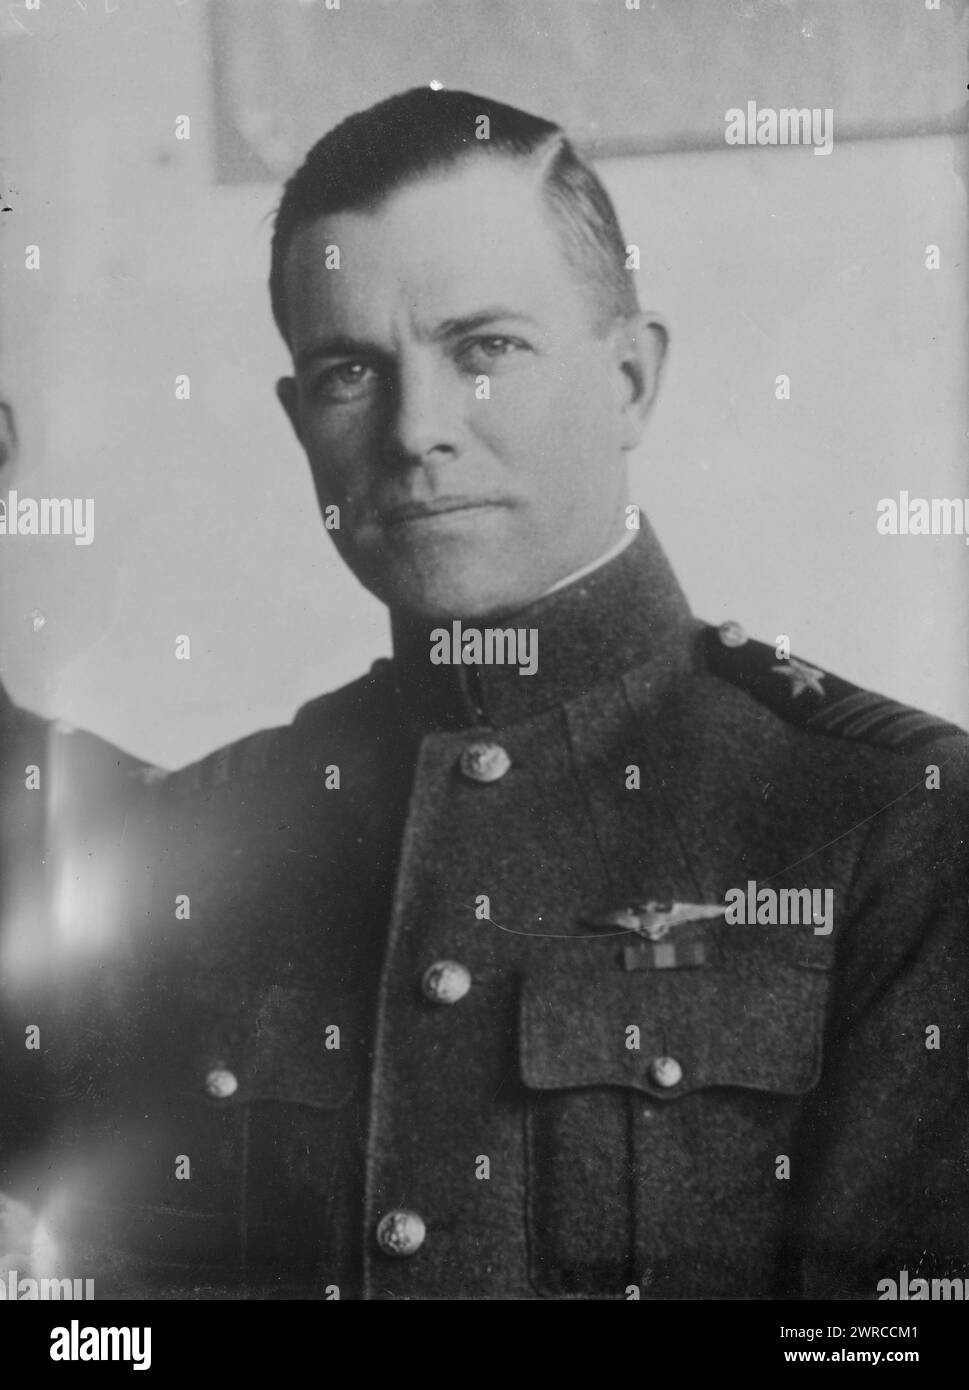 COD. P.N.L. Bellinger, la fotografia mostra l'ufficiale della Marina degli Stati Uniti Patrick Nieson Lynch Bellinger (1885-1962) che era un pioniere dell'aviazione., tra CA. 1915 e ca. 1920, Glass negative, 1 negativo: Glass Foto Stock